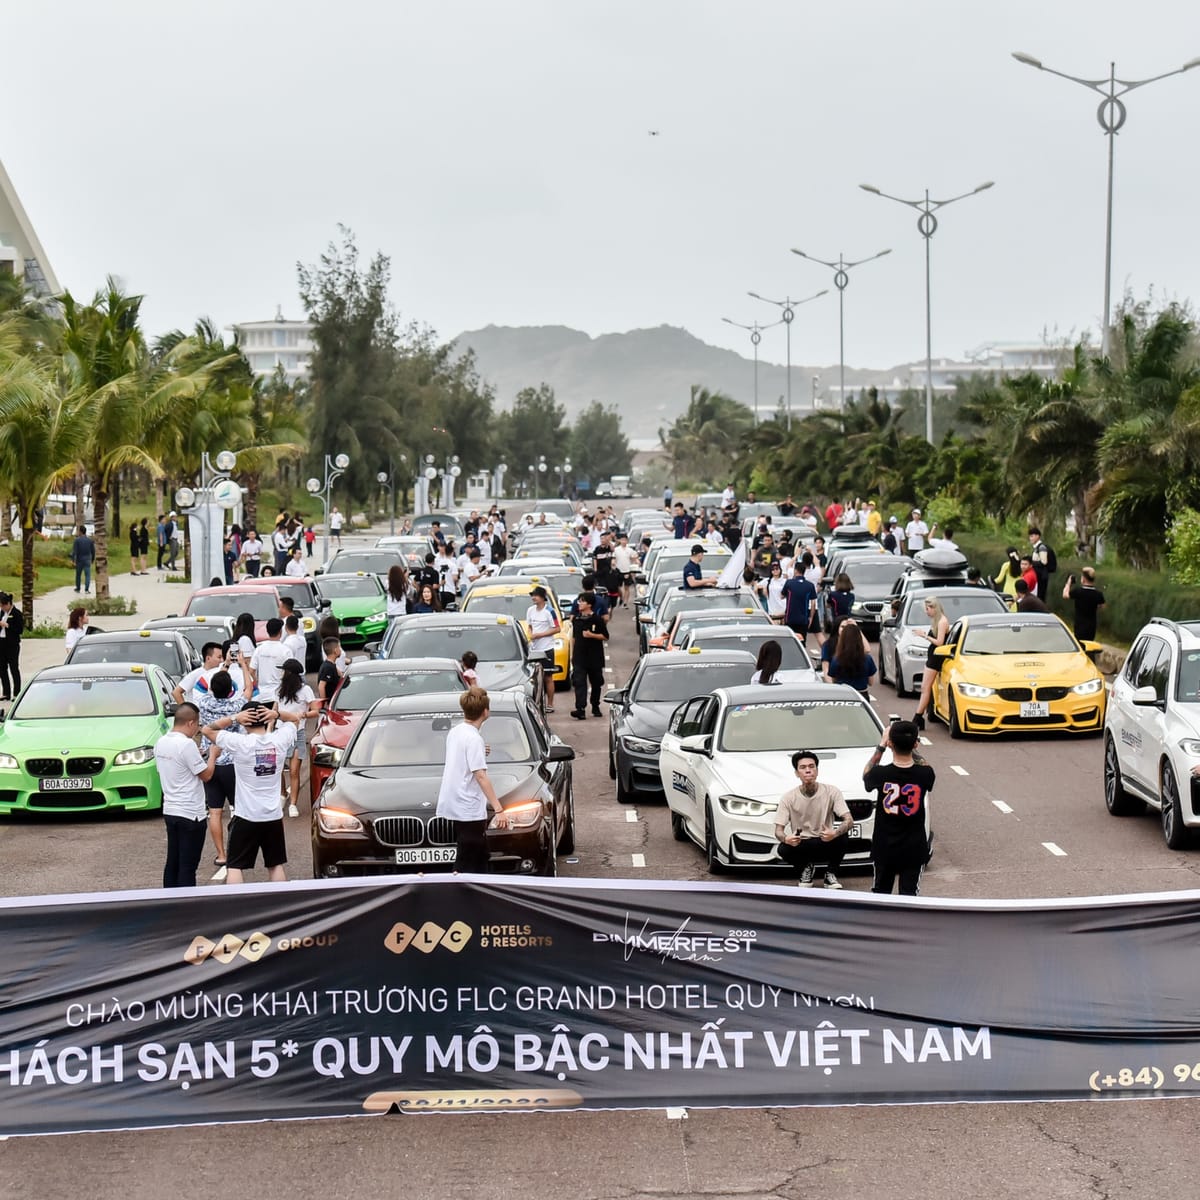 [Gallery] Bimmerfest Vietnam 2020 - album ảnh diễu hành trên đường phố Quy Nhơn (by 117 Media) - Phần 1